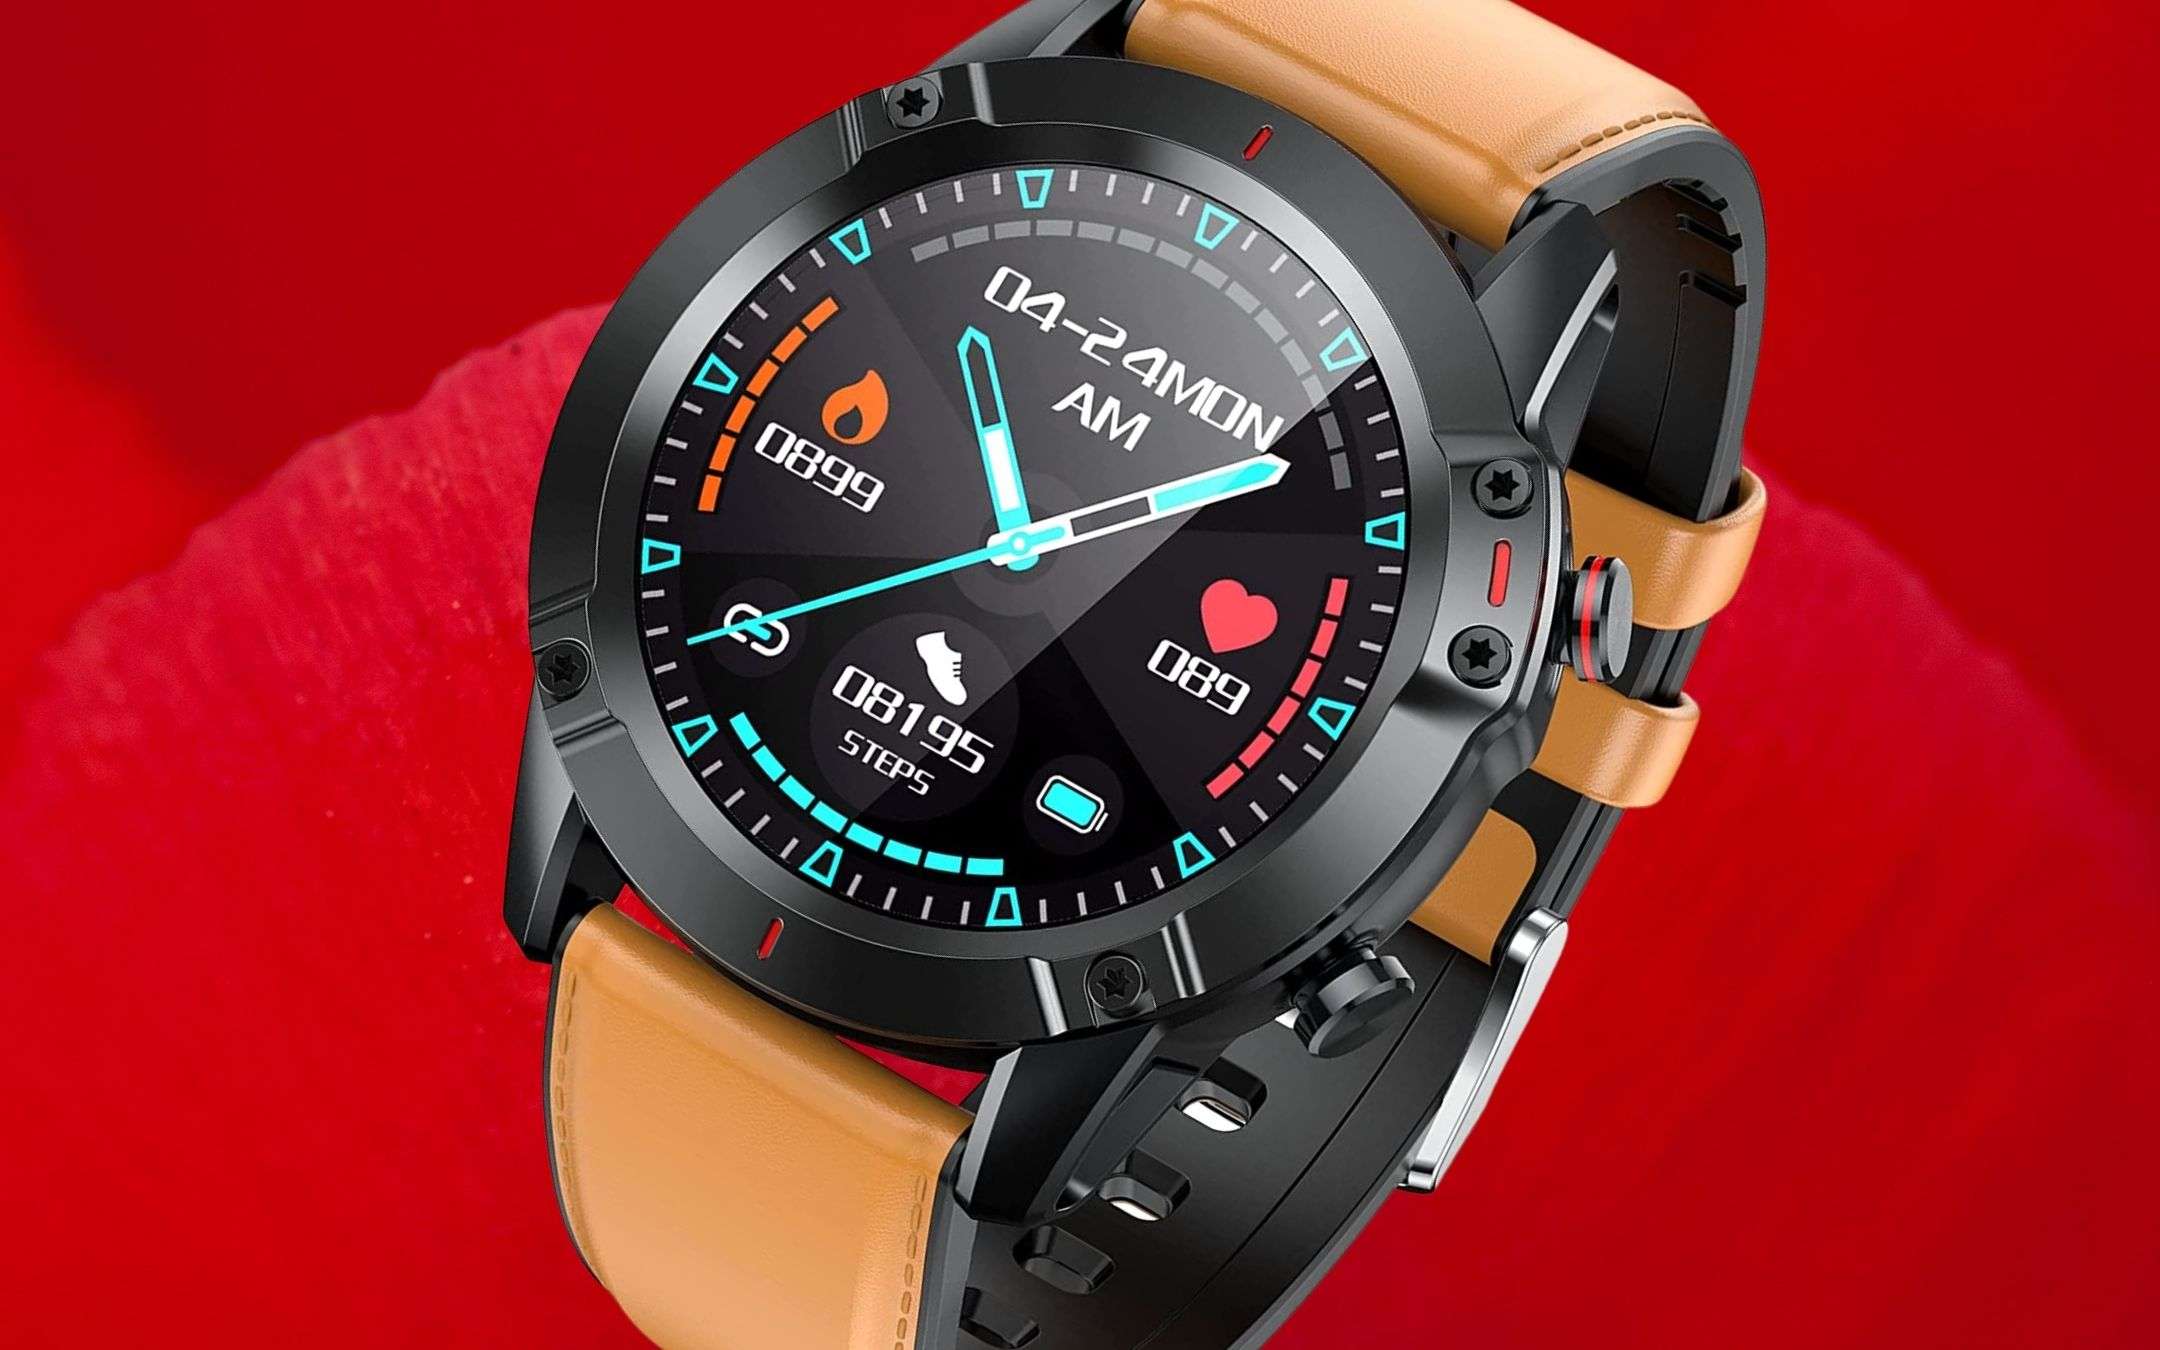 Potente ed elegante smartwatch: 25€ su Amazon (-40%)